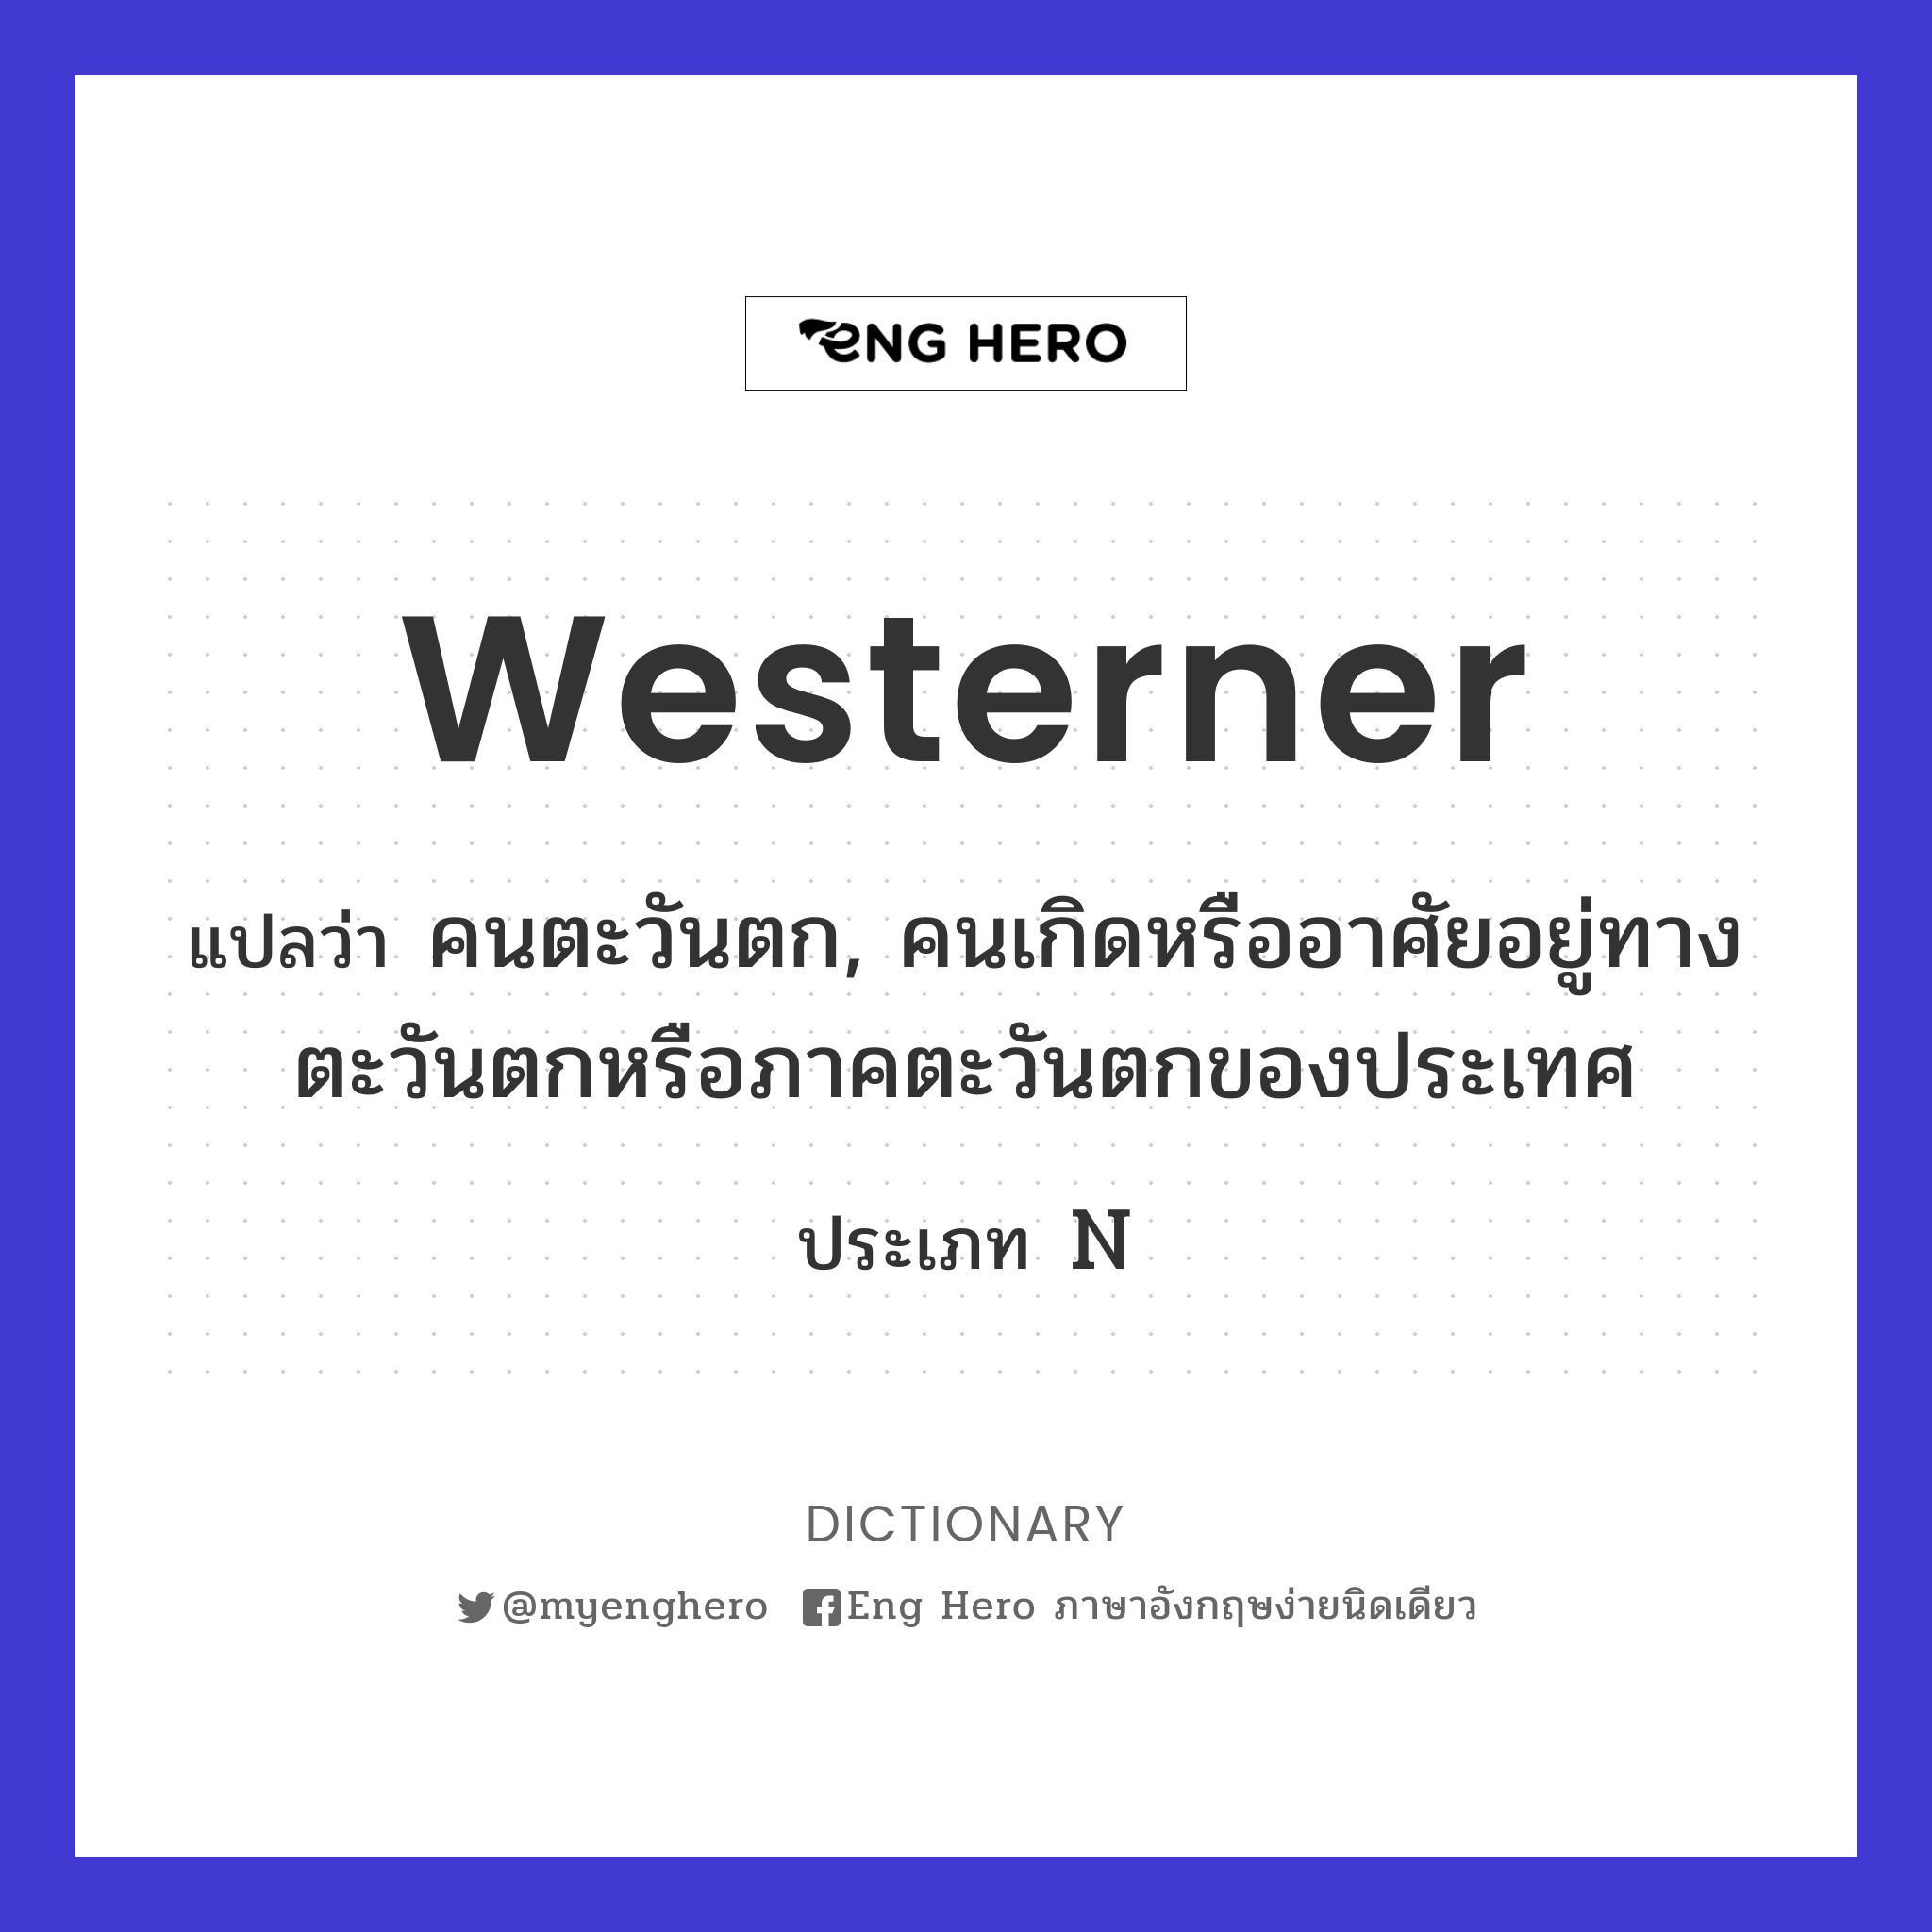 Westerner